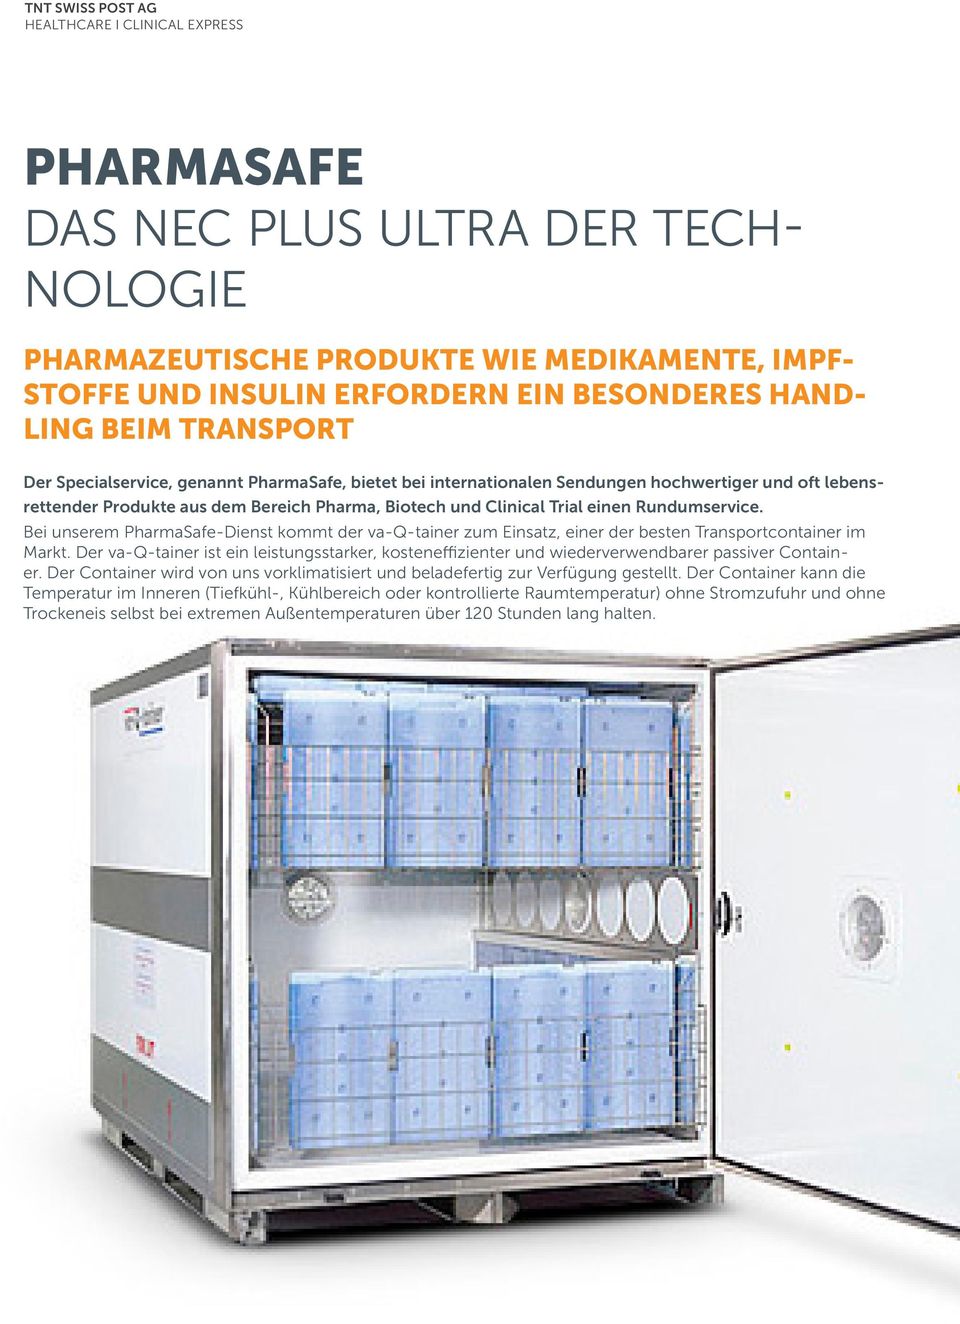 Rundumservice. Bei unserem PharmaSafe-Dienst kommt der va-q-tainer zum Einsatz, einer der besten Transportcontainer im Markt.